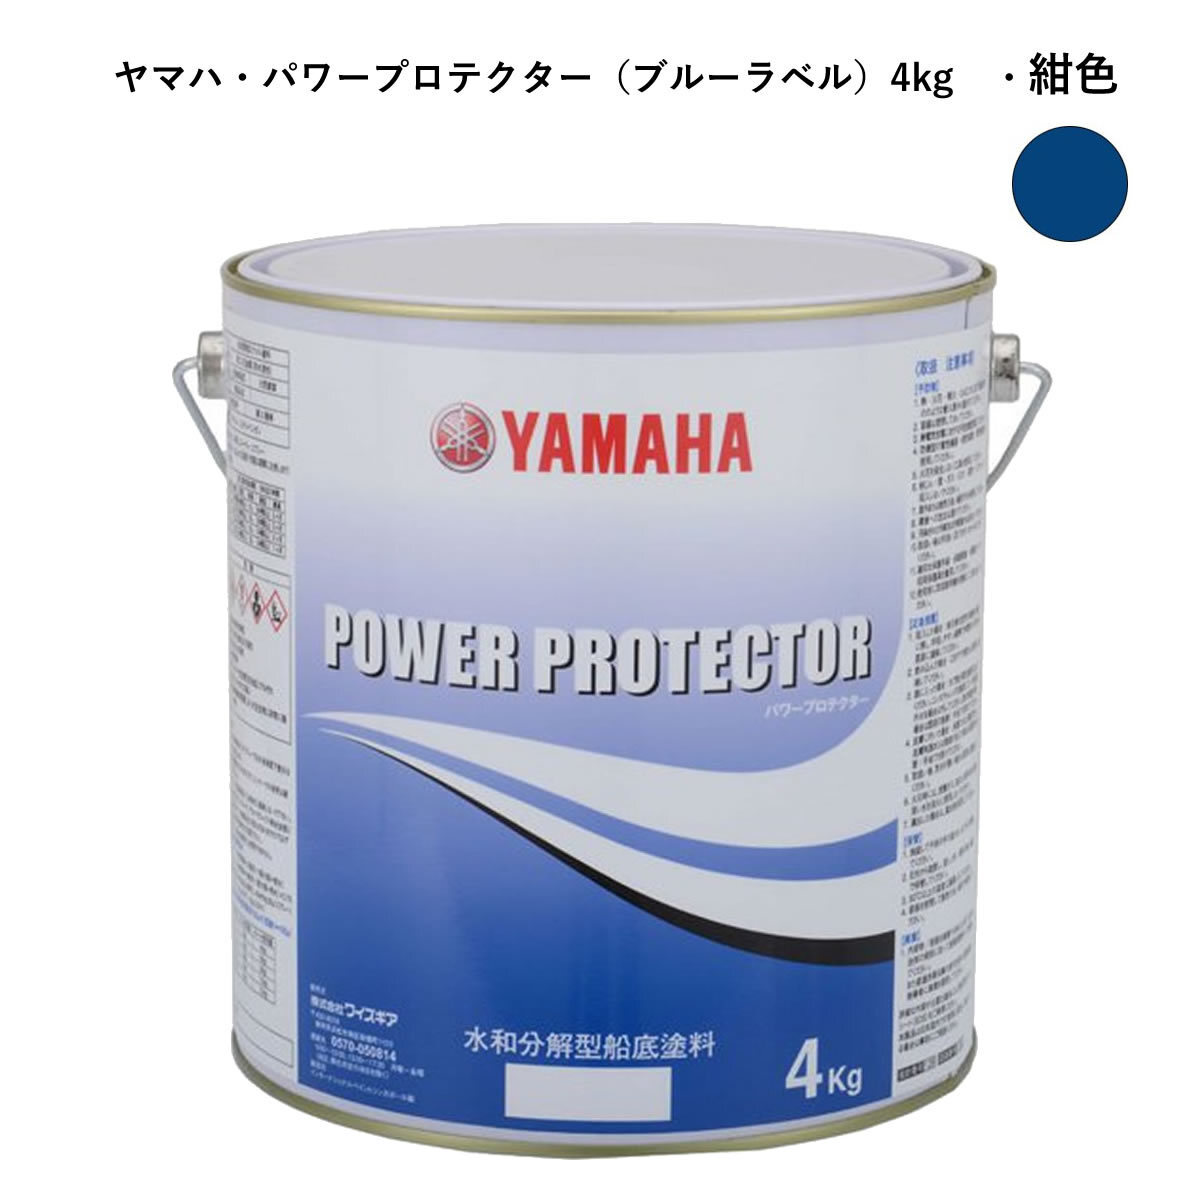 ヤマハ船底塗料 紺色4kg パワープロテクター 青缶 自己消耗型 QW6-NIPY16010の画像1